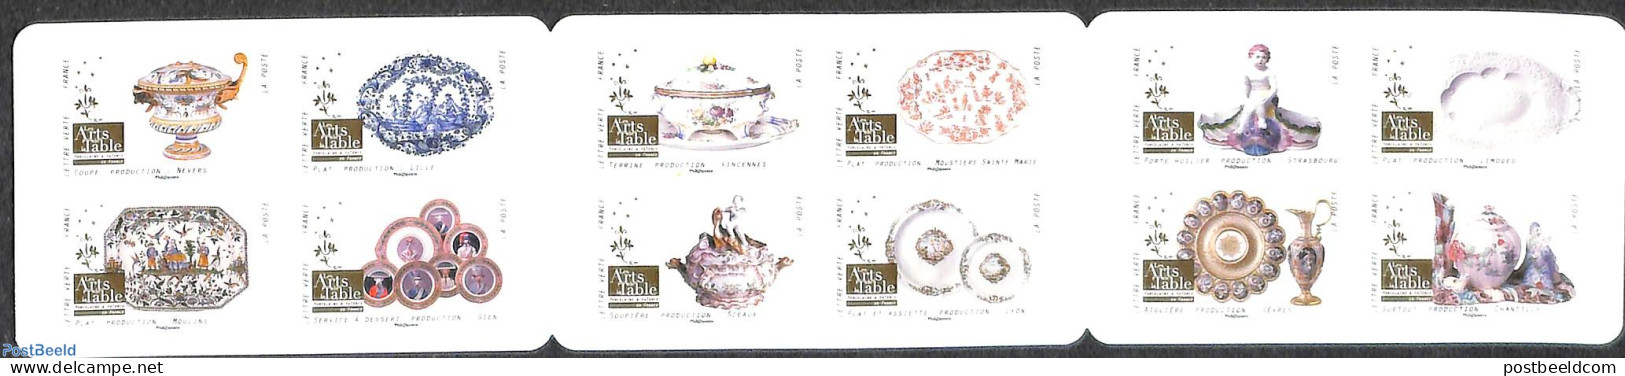 France 2018 Porcelain 12v S-a In Foil Booklet, Mint NH, Stamp Booklets - Art - Art & Antique Objects - Ceramics - Neufs